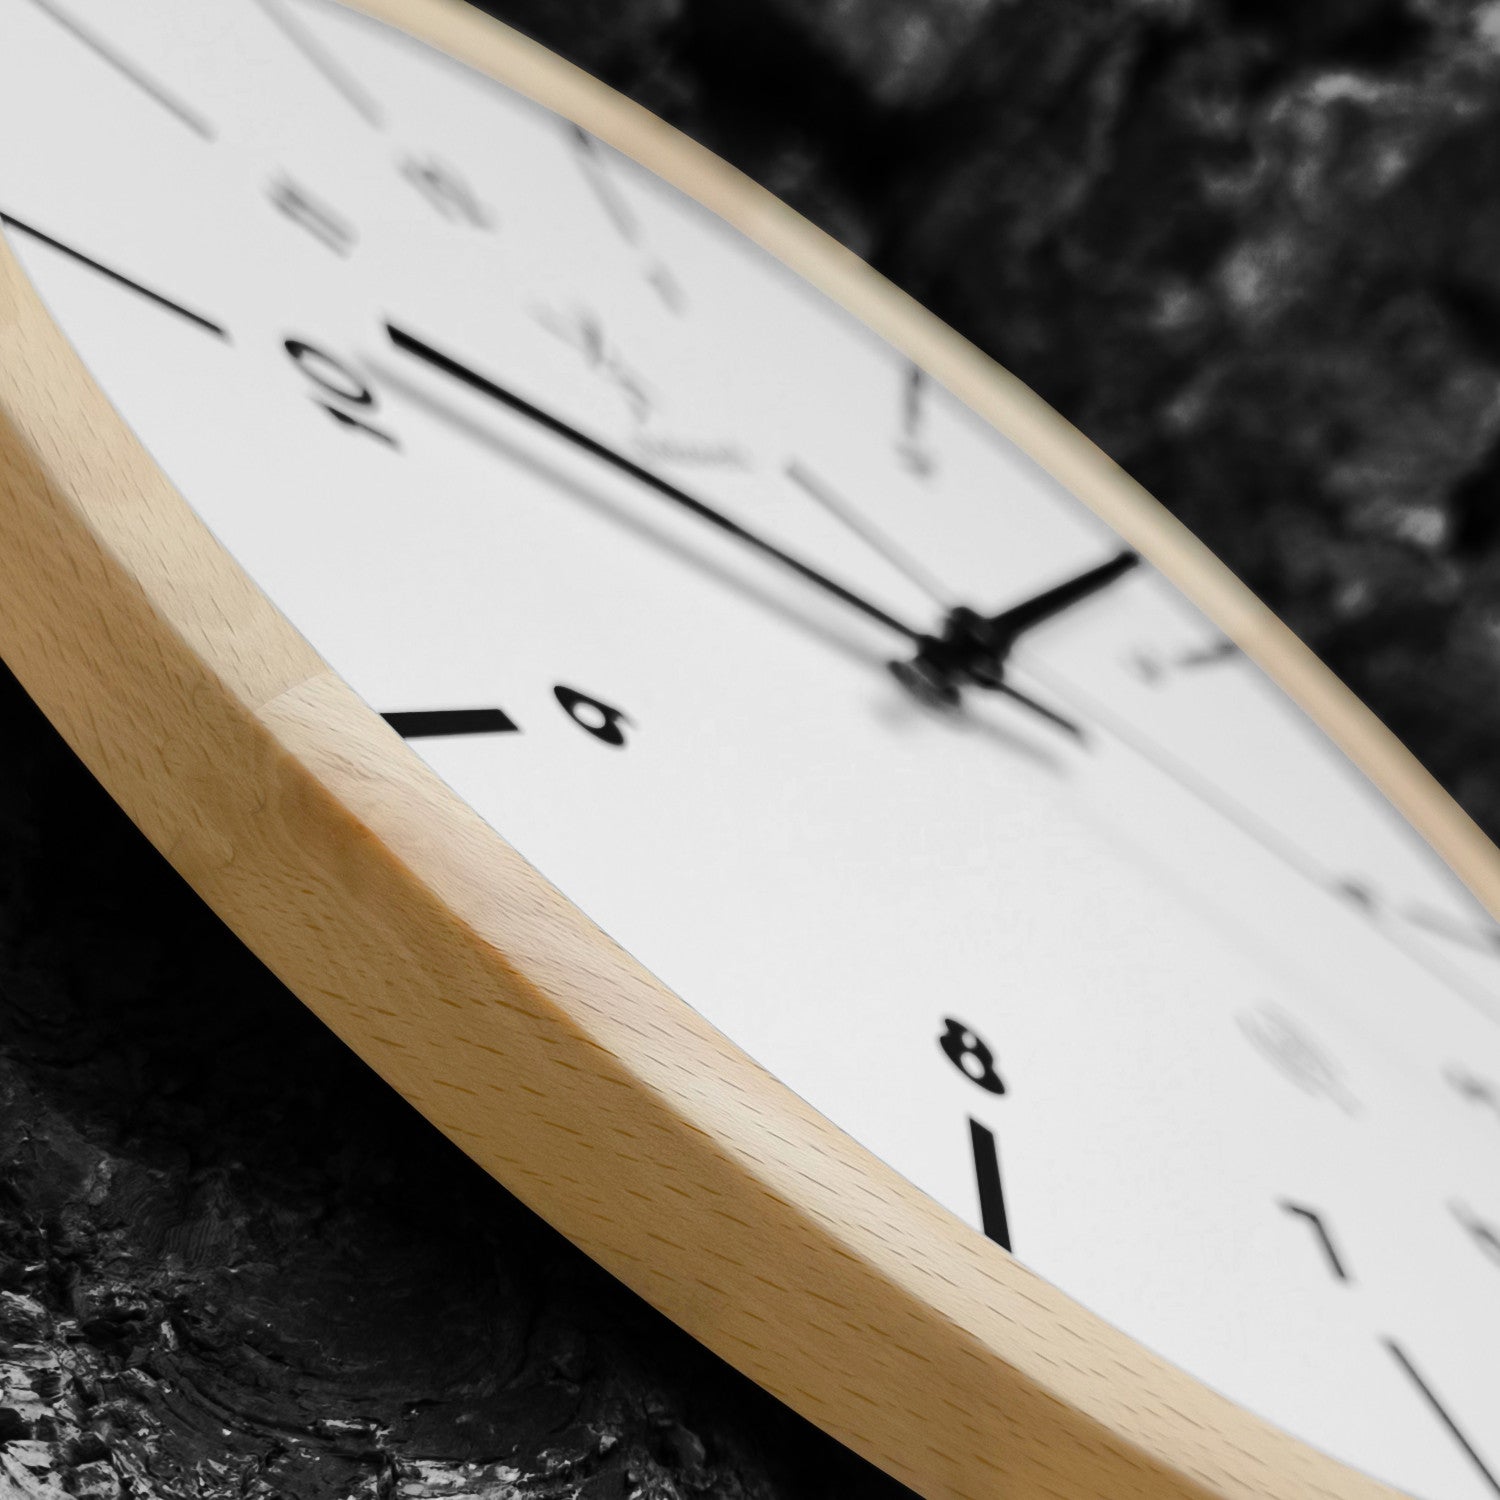 Holzwerk MARBURG Holz Funkwanduhr, moderne Designer Wanduhr, 32 cm Holz Funk Wand Uhr lautlos ohne Tick Geräusche, beige, weiß, schwarz, seitlich liegend